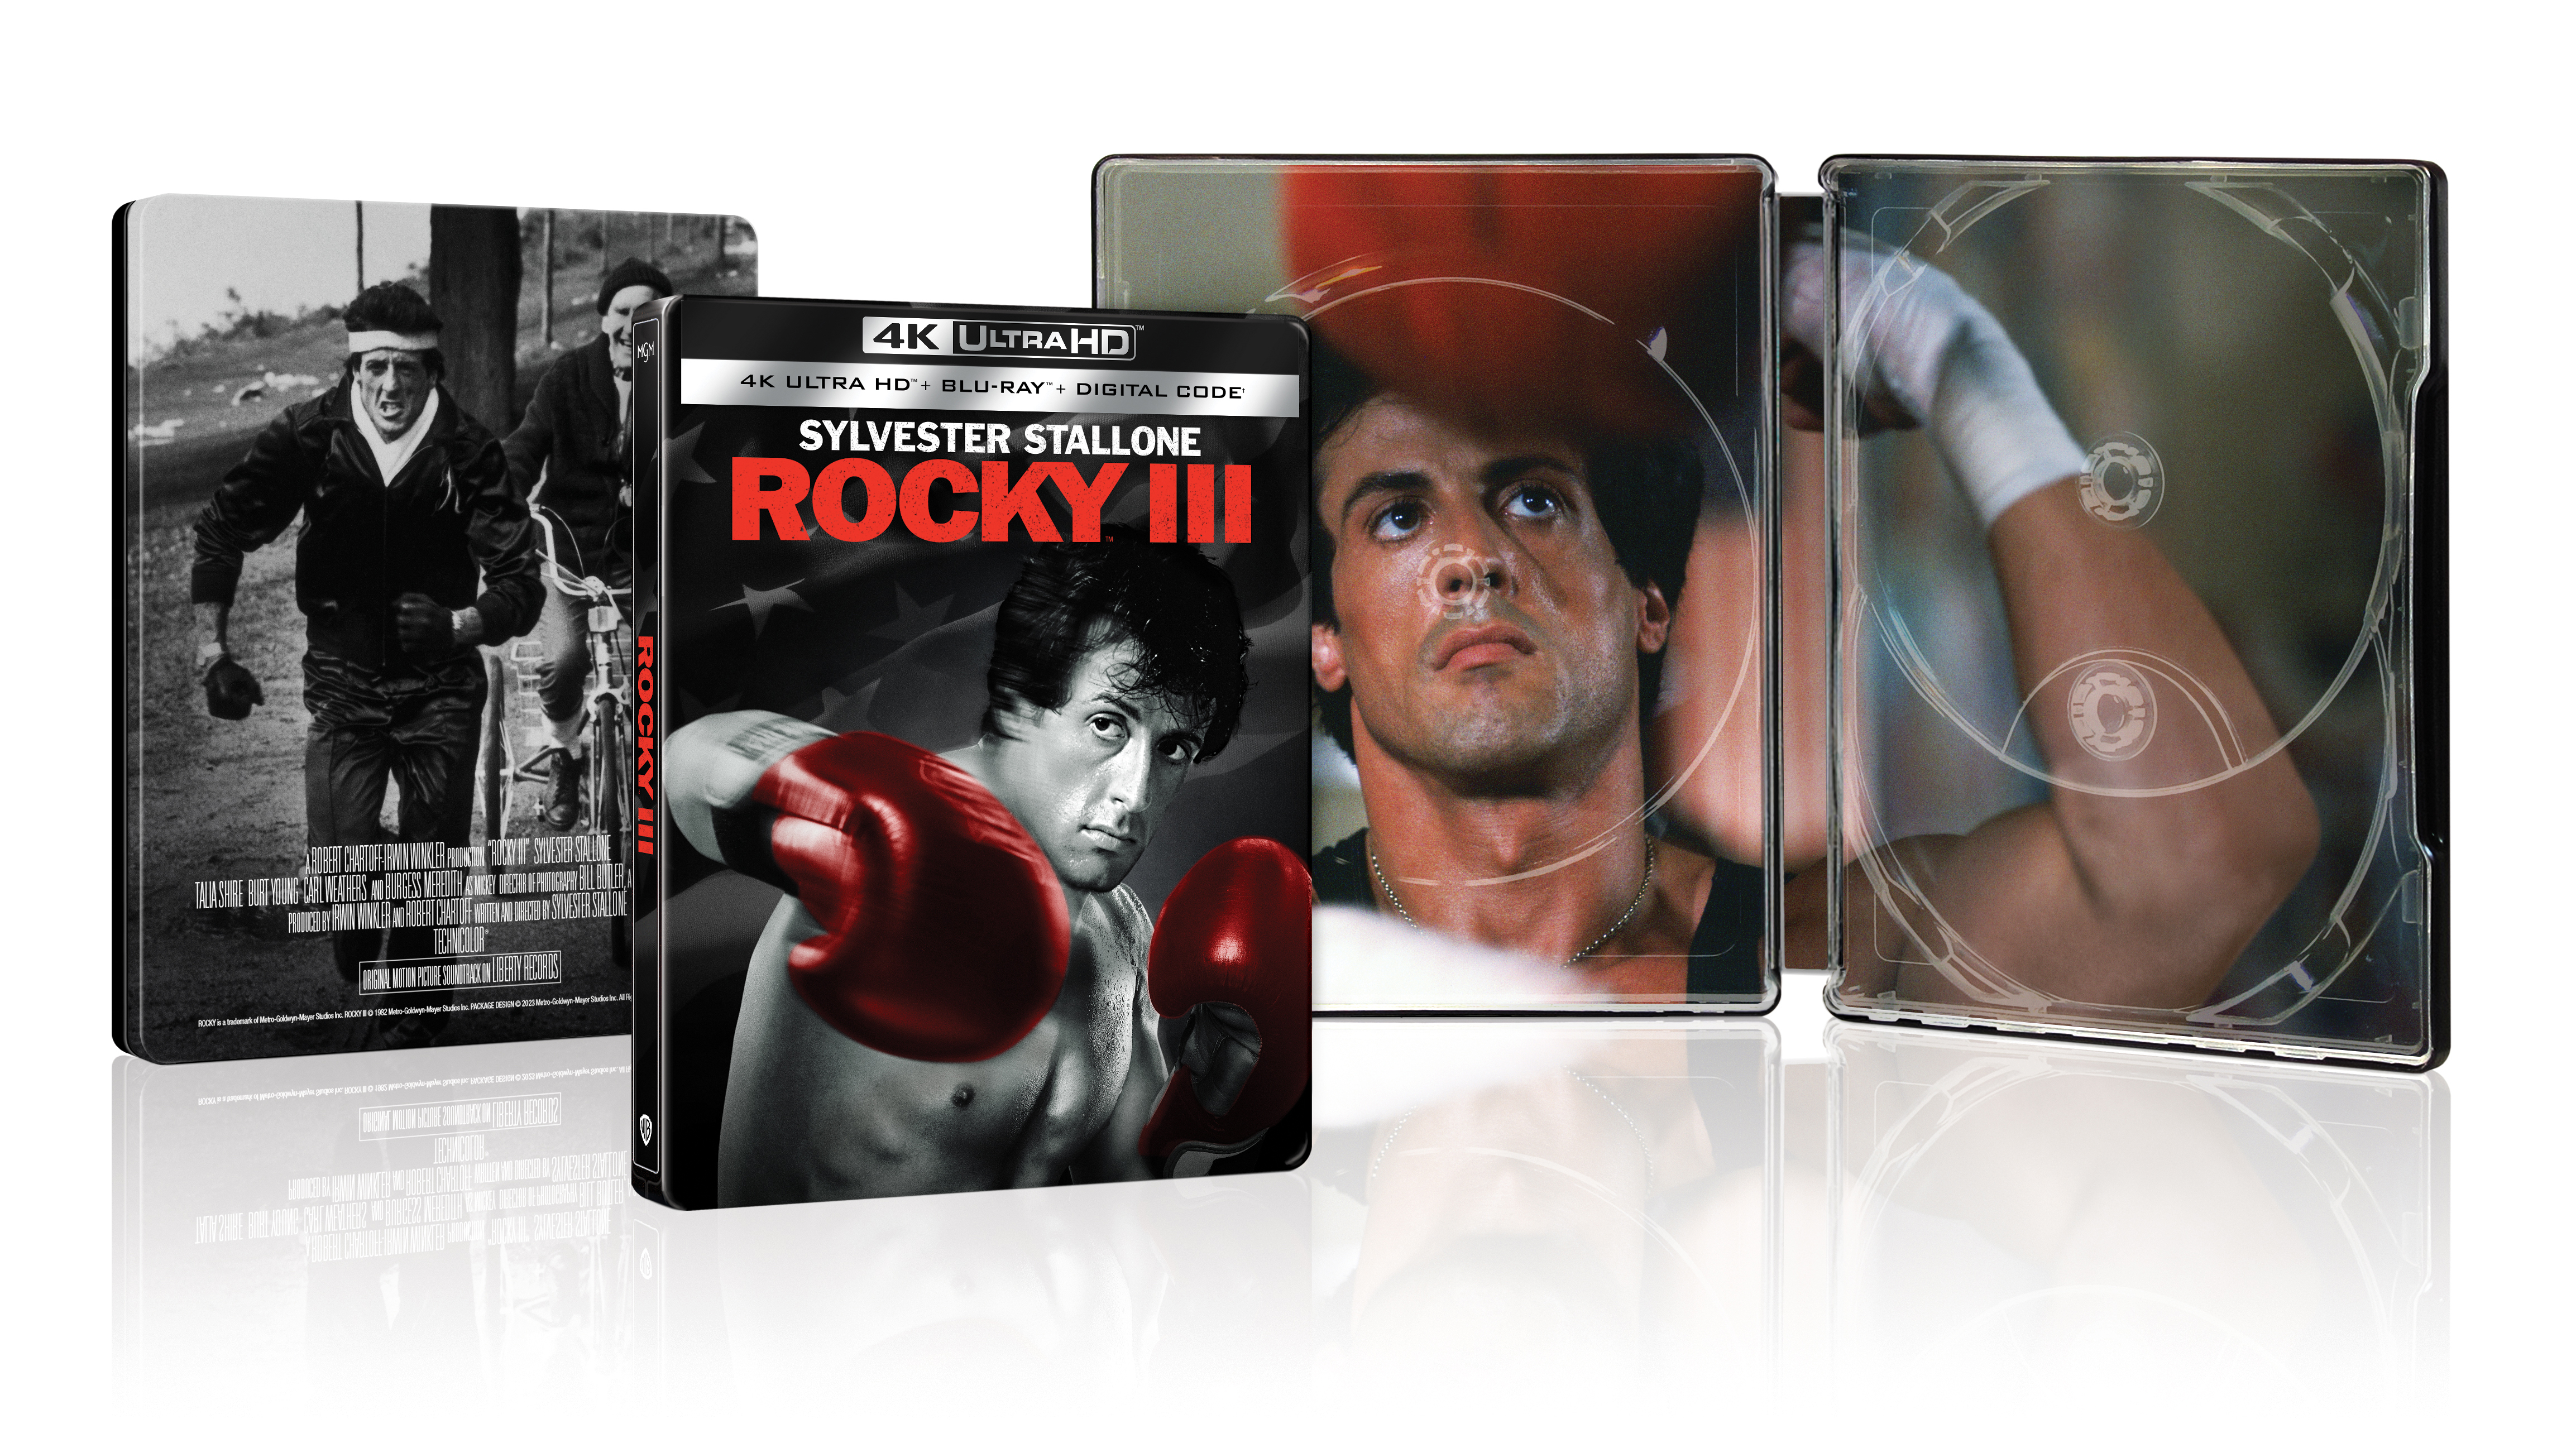 Rocky III [SteelBook] [Includes Digital Copy] [4K Ultra HD Blu-ray/Blu-ray] [Only @ Best Buy] [1982]